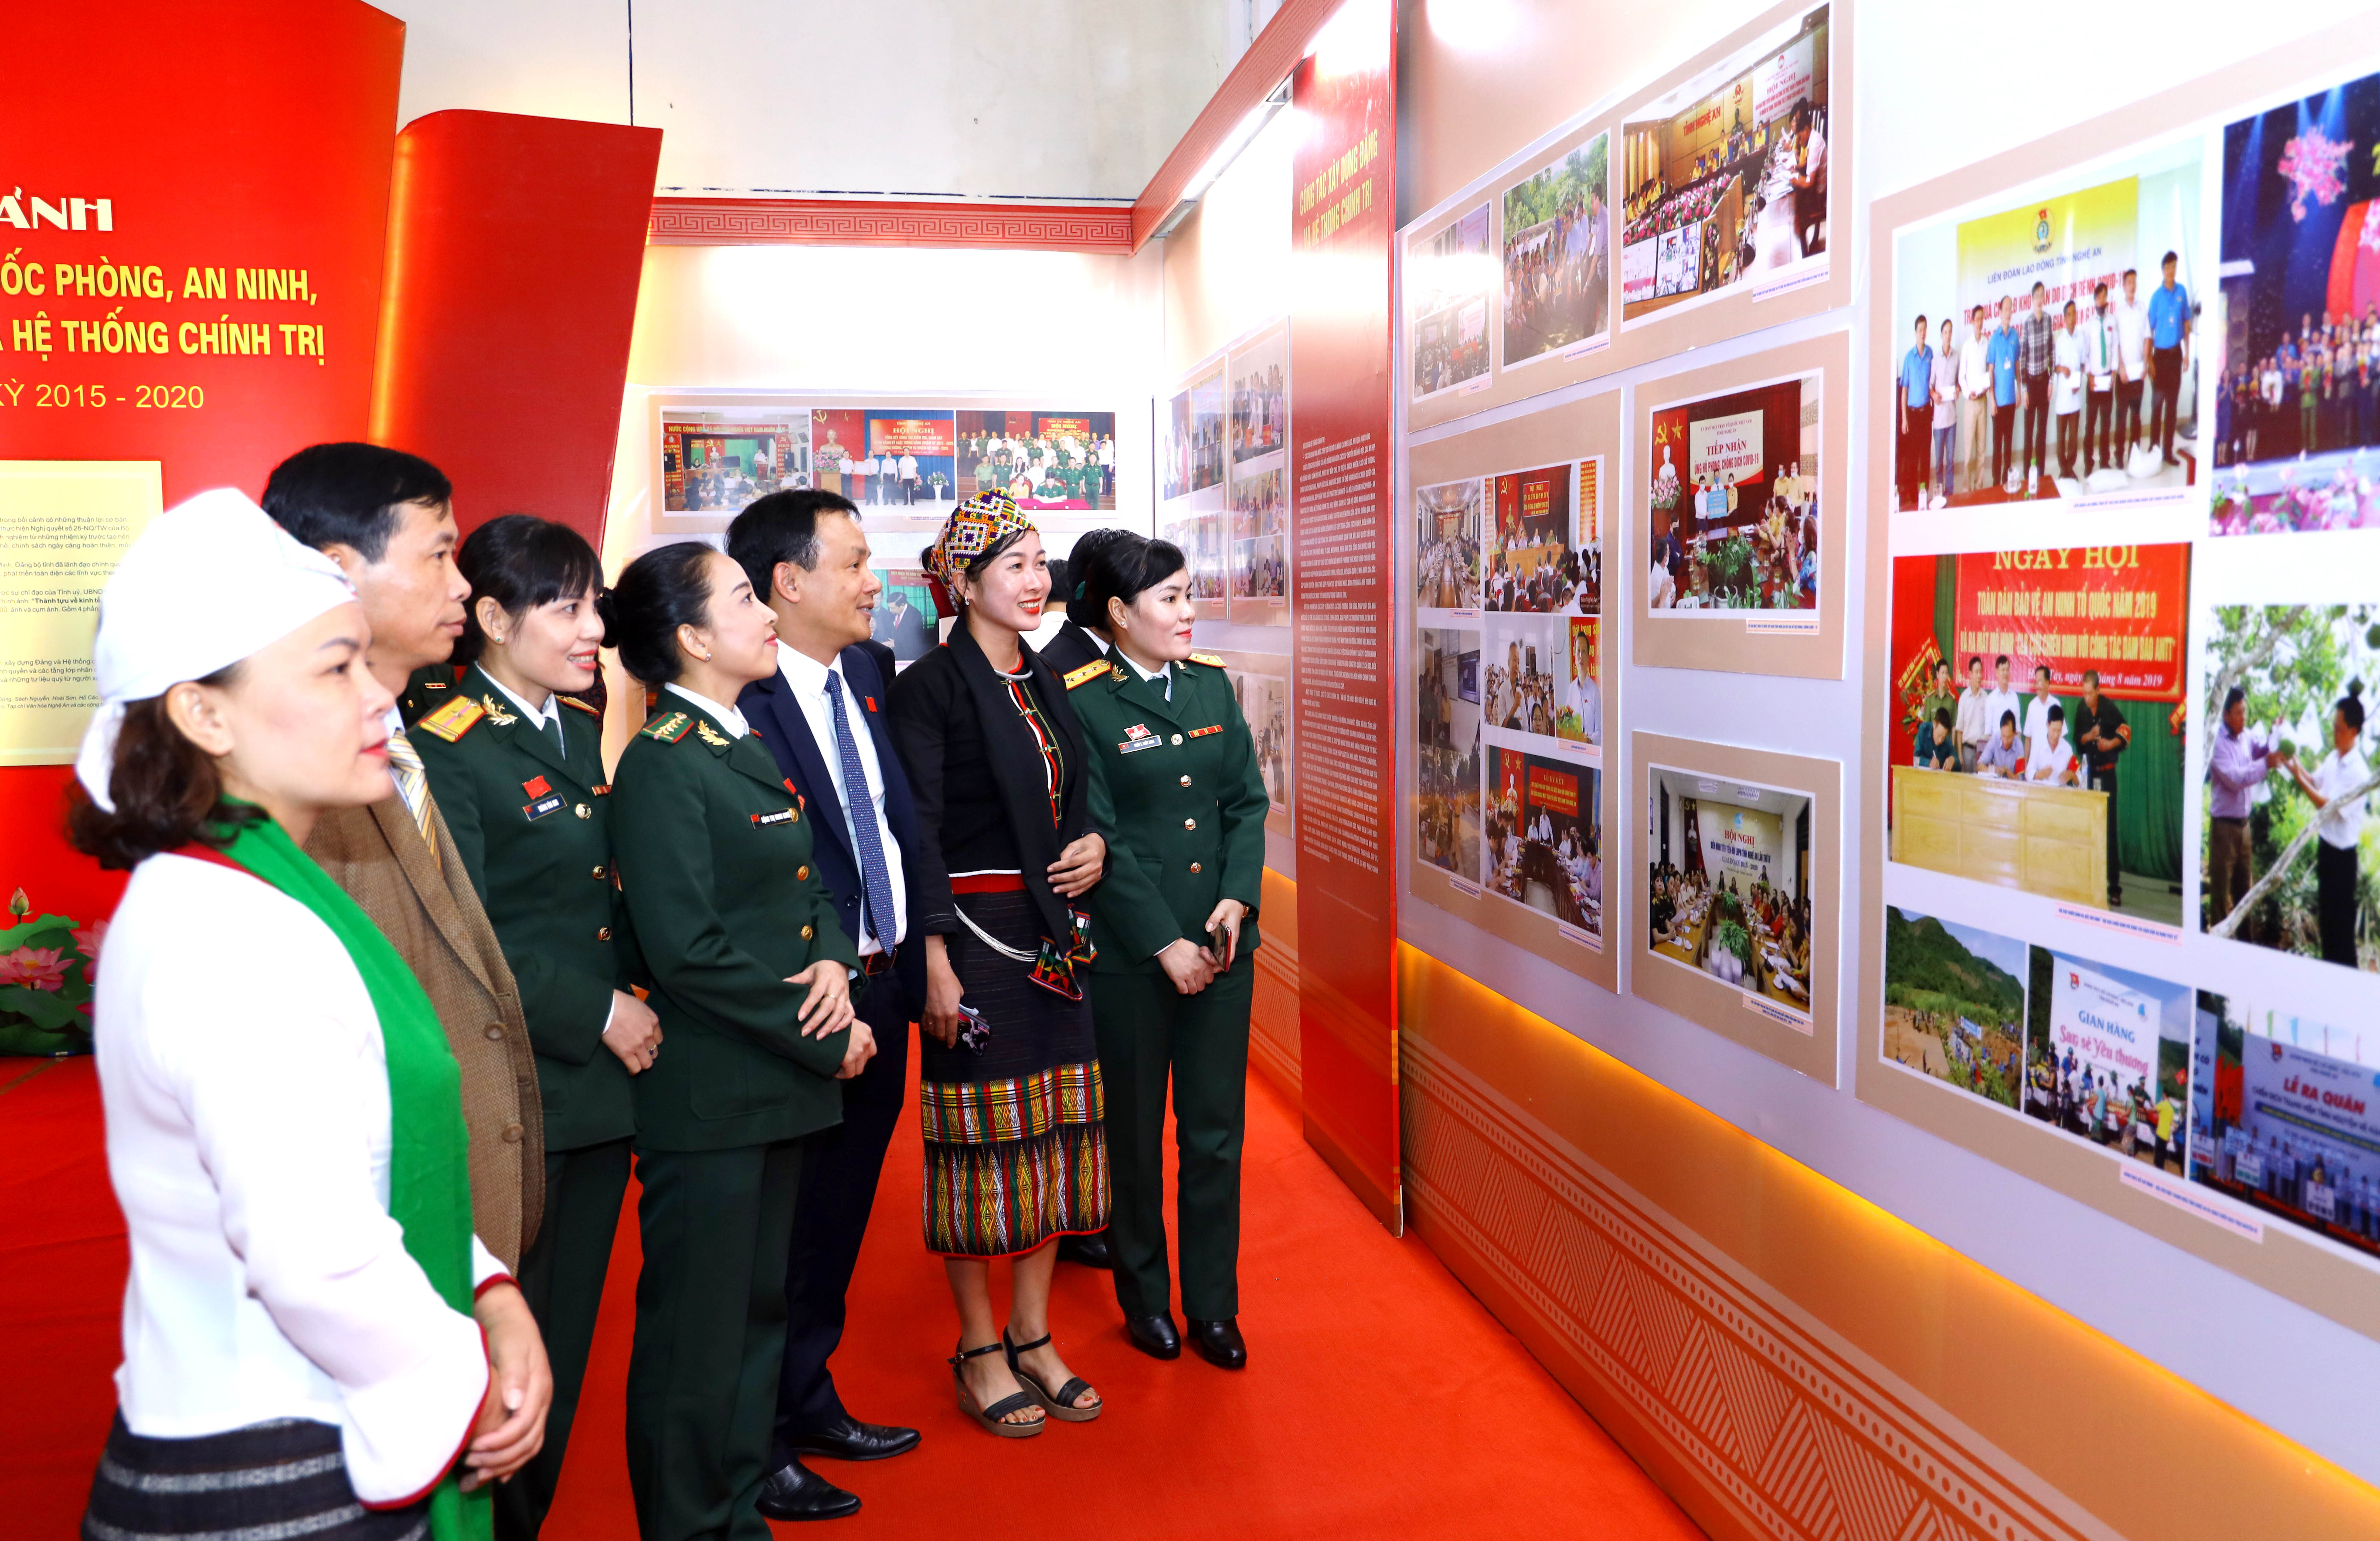 Đại biểu tham quan khu vực trưng bày những hình ảnh về thành tựu kinh tế - xã hội tỉnh Nghệ An nhiệm kỳ 2015-2020 tại Đại hội. Ảnh Nguyên Nguyên